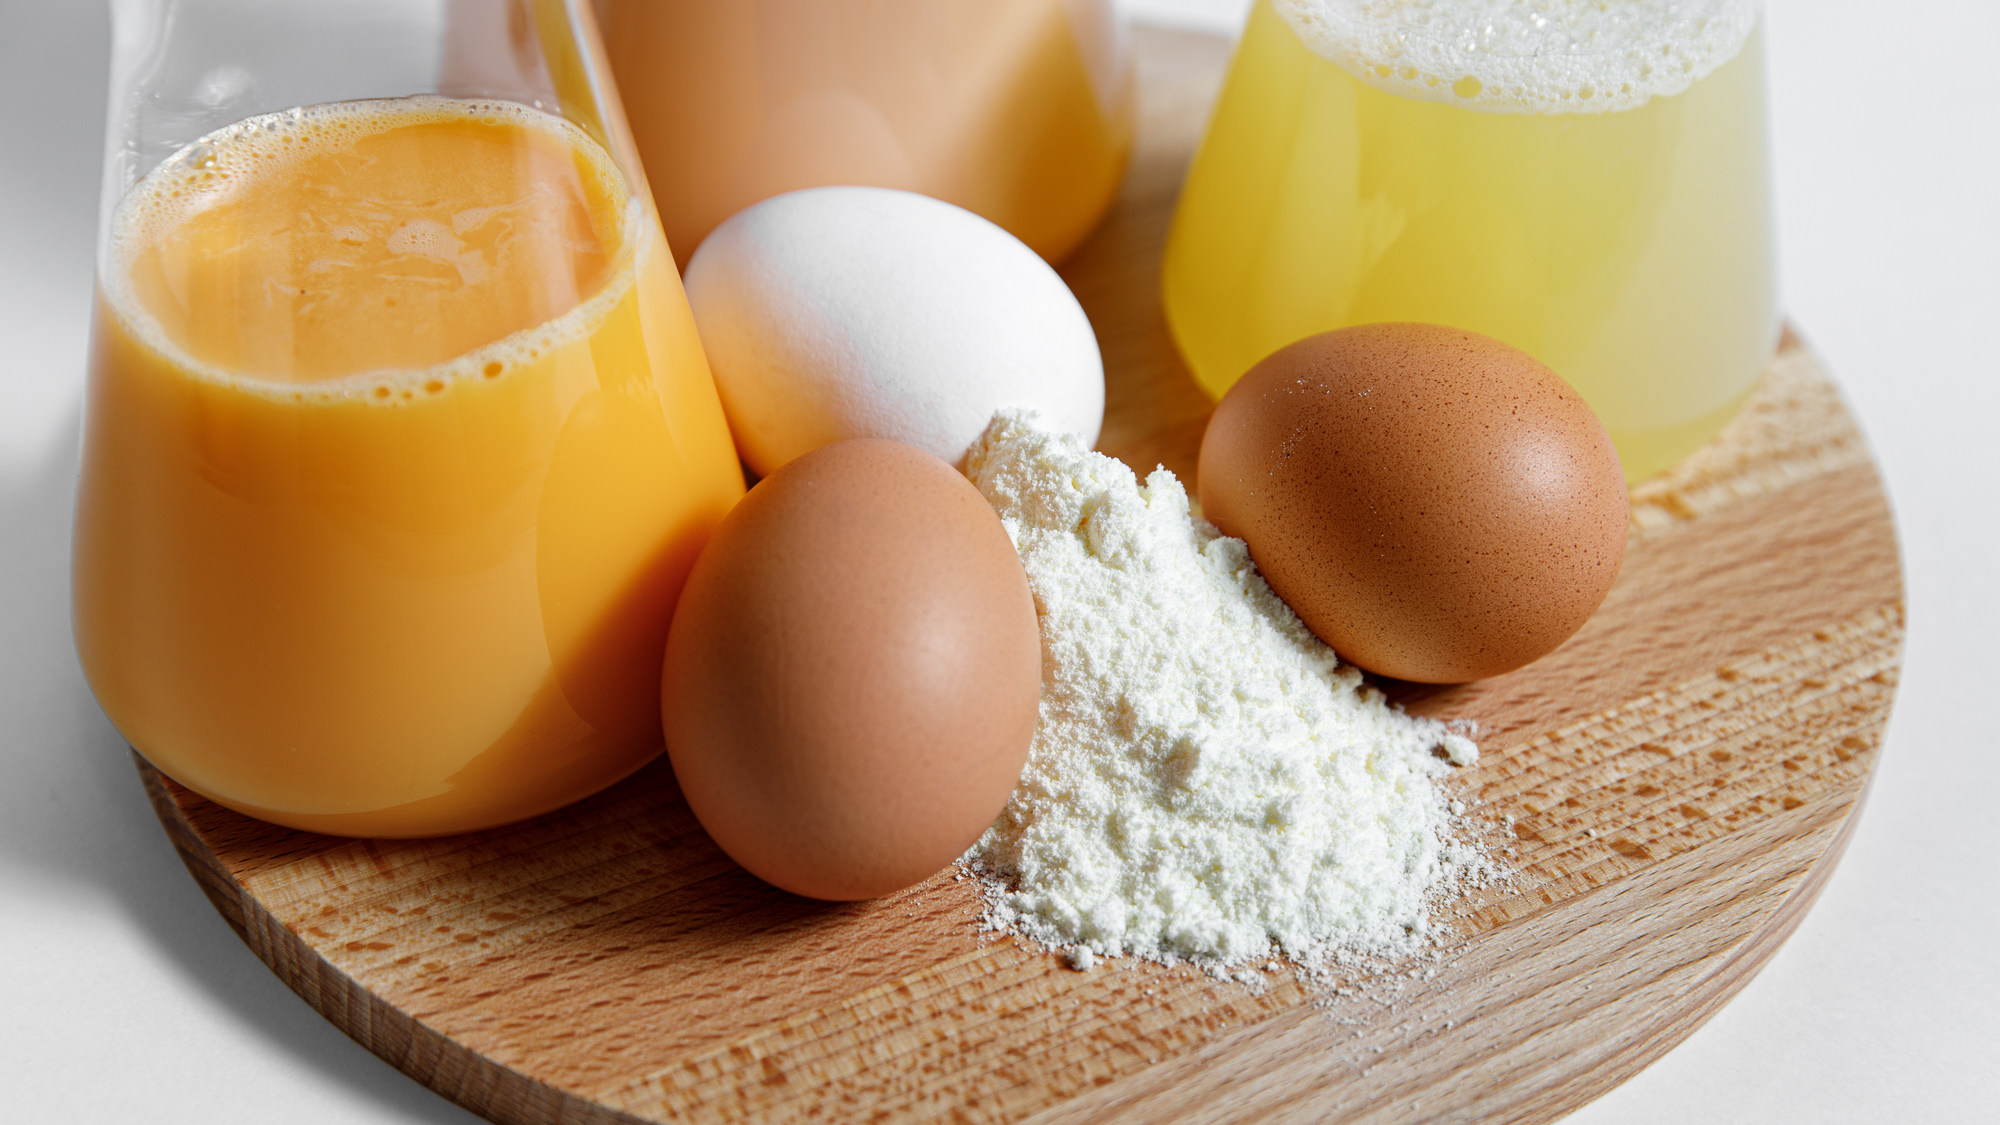 Контроль качества при производстве яичной продукции